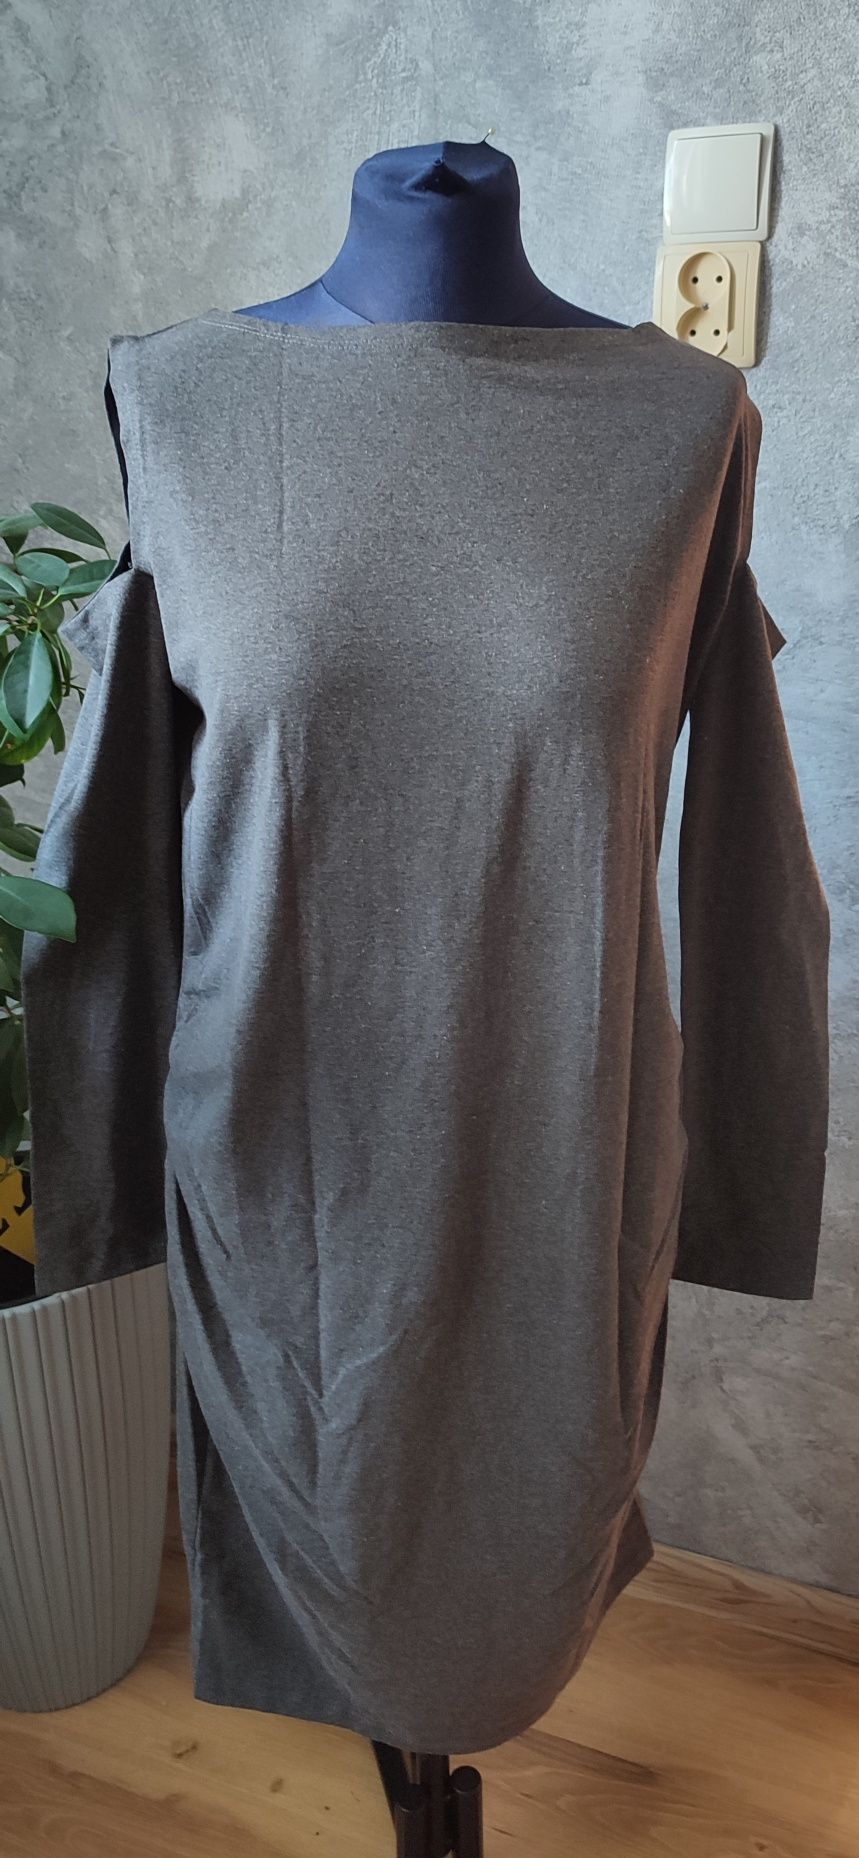 Nowa szara sukienka ciążowa z wyciętymi ramionami rozmiar XXL 44